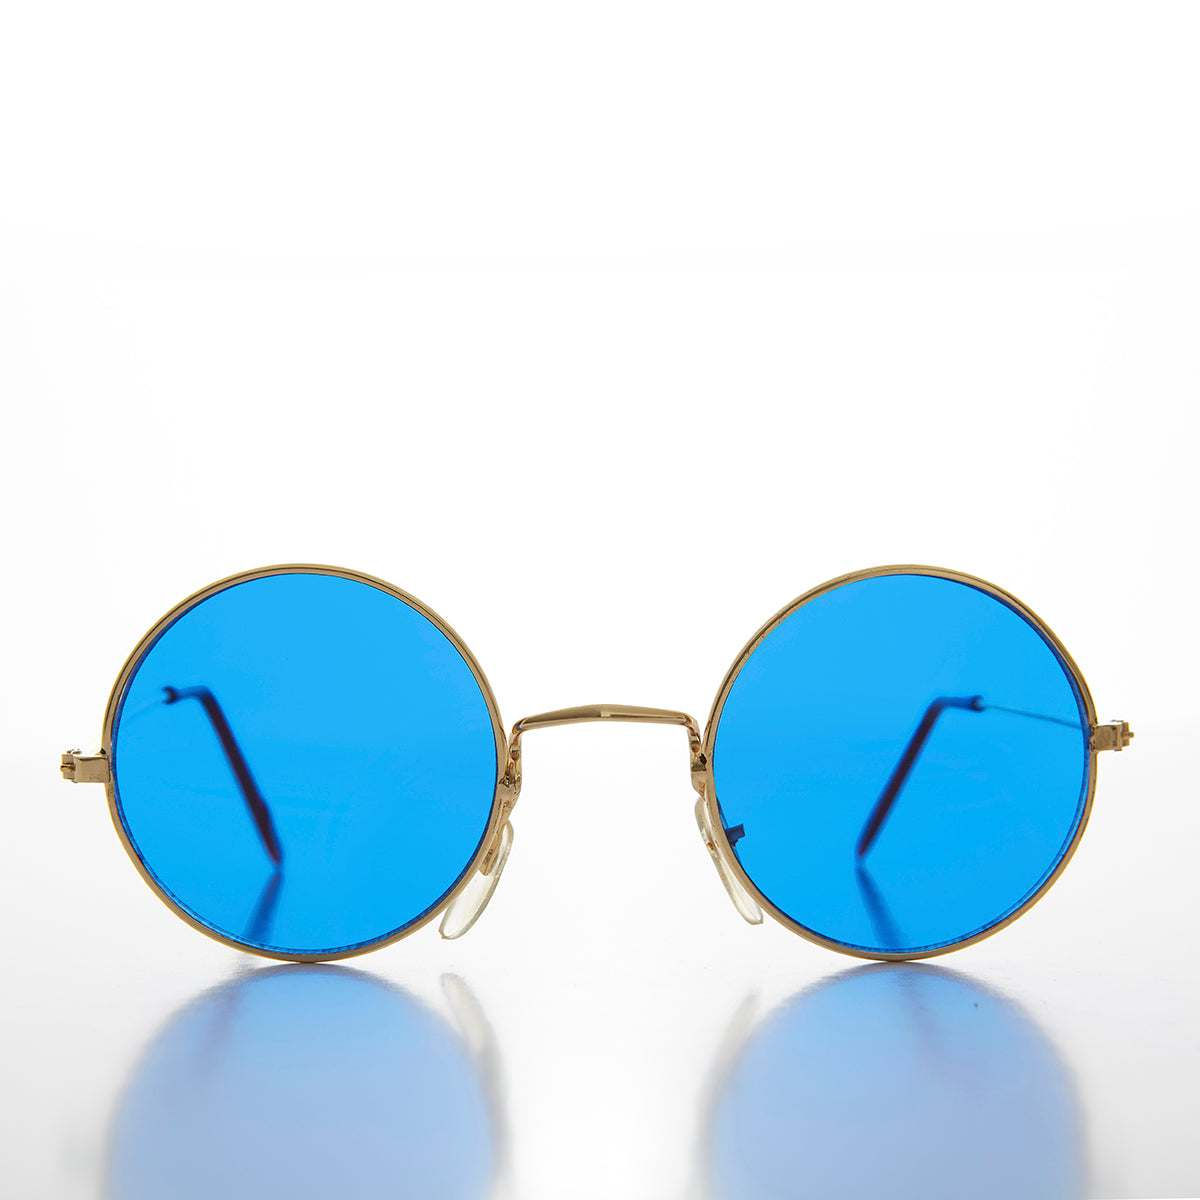 Round Circle Sunglass with Blue Tinted Lens - Benji – Sunglass Museum